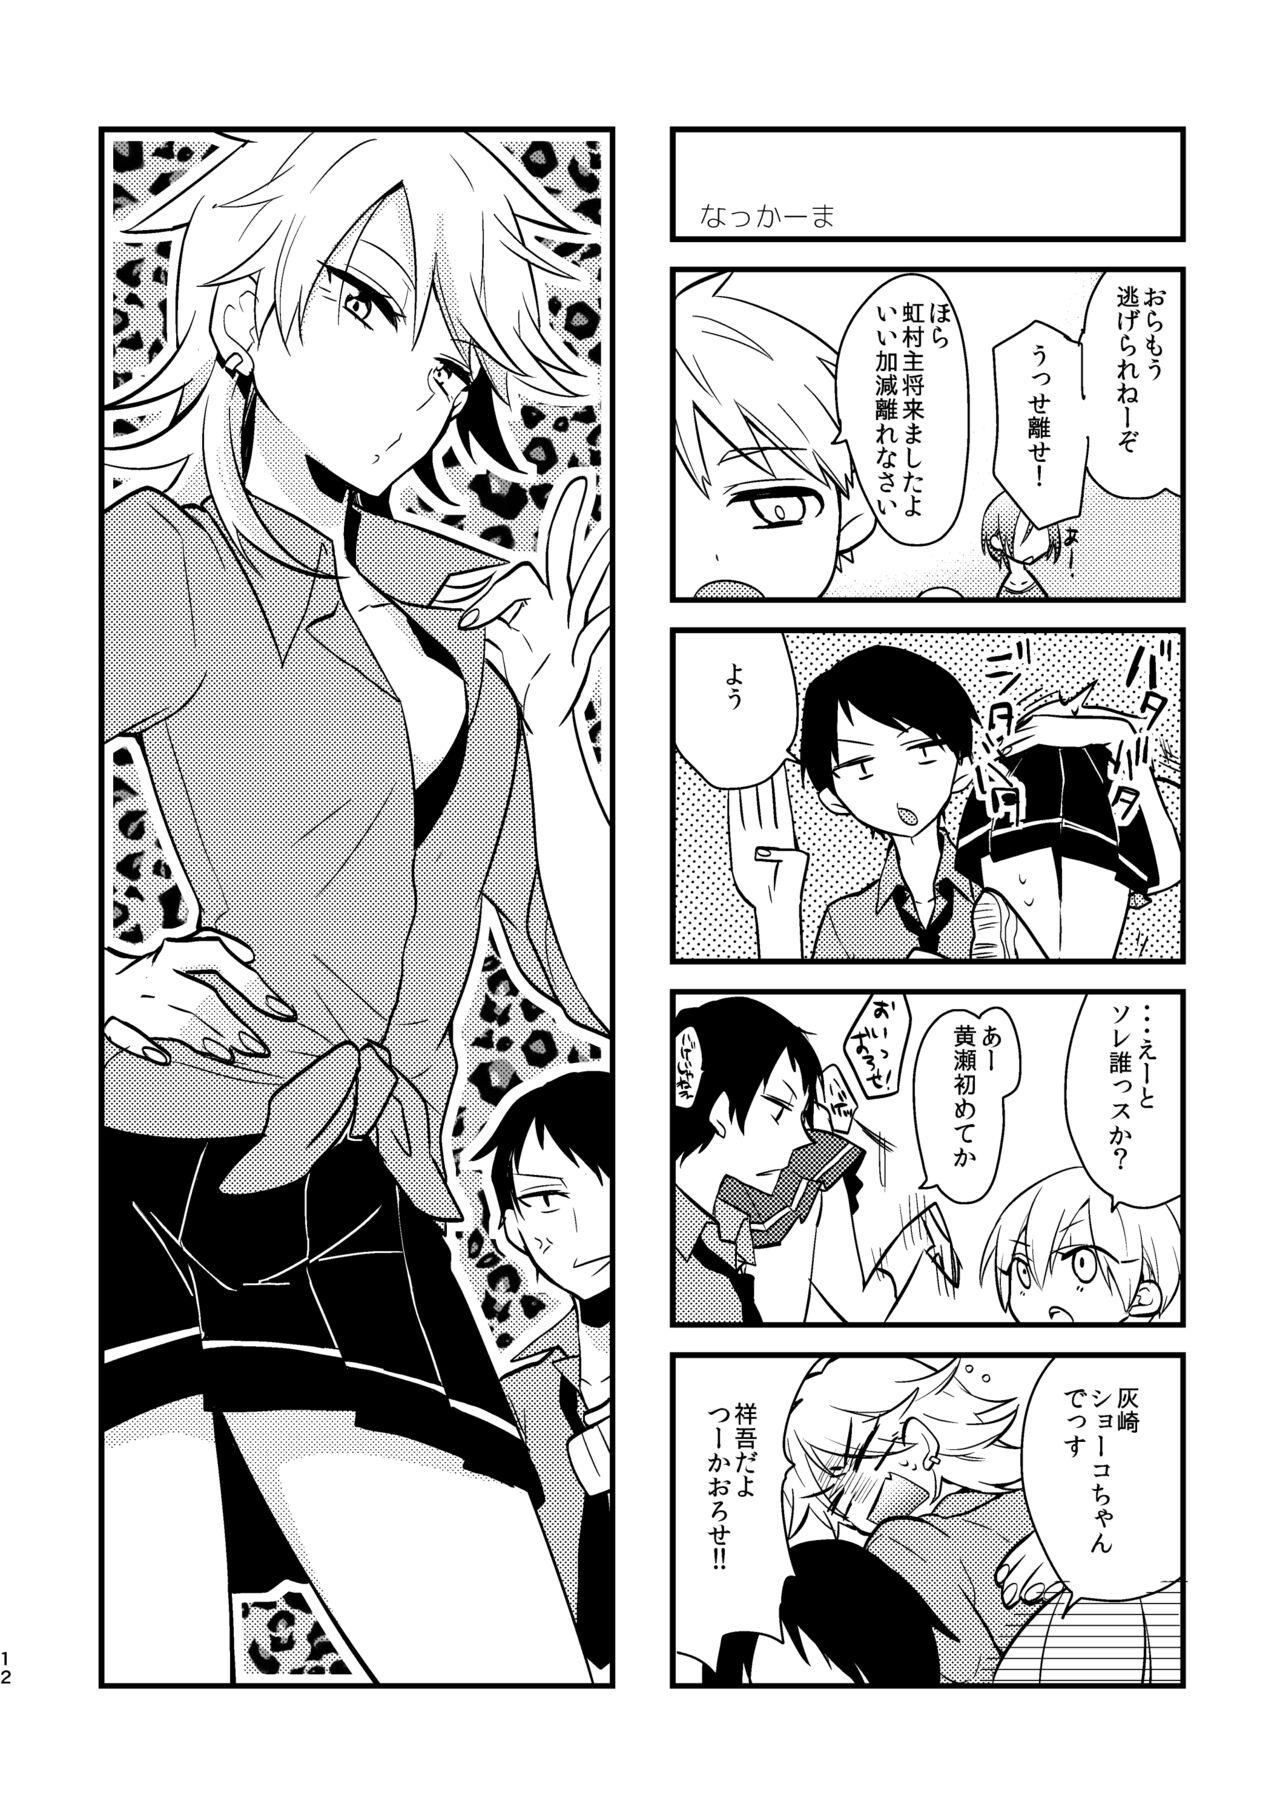 Gayclips Otoko Tokidoki Onnanoko 2 - Kuroko no basuke Kashima - Page 10